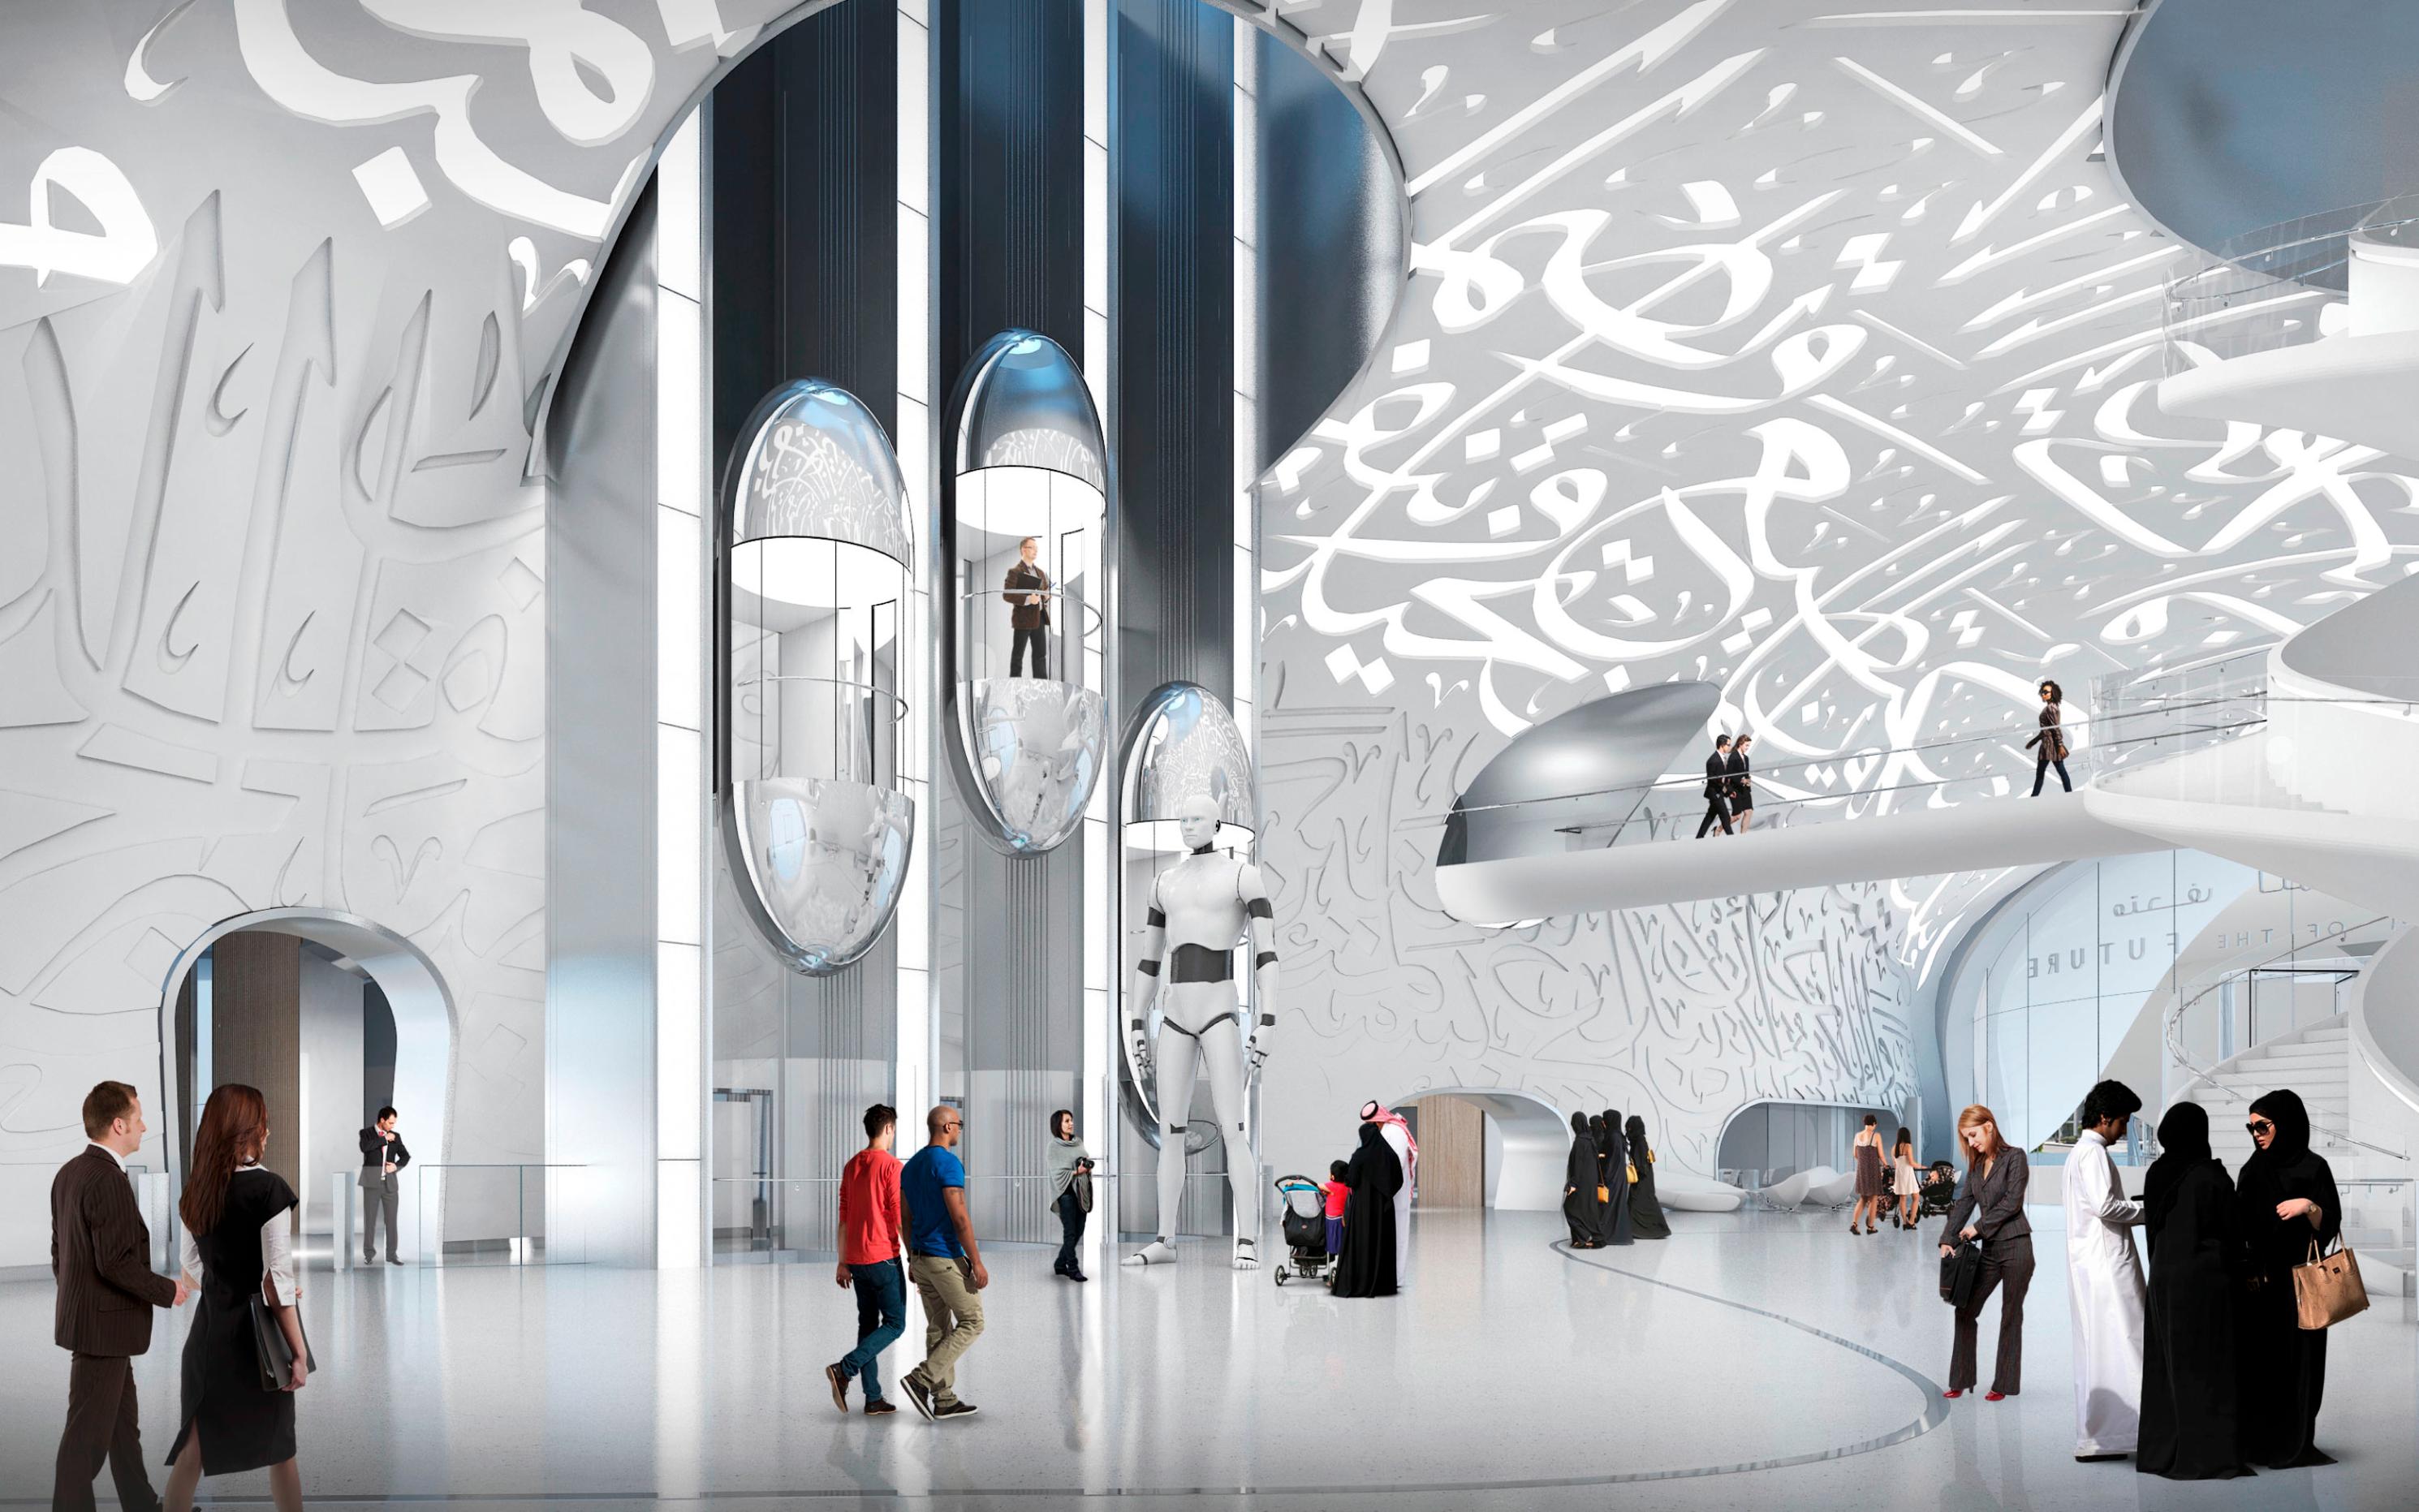 Dubai's Museum of the Future: a new world icon? | CNN Travel